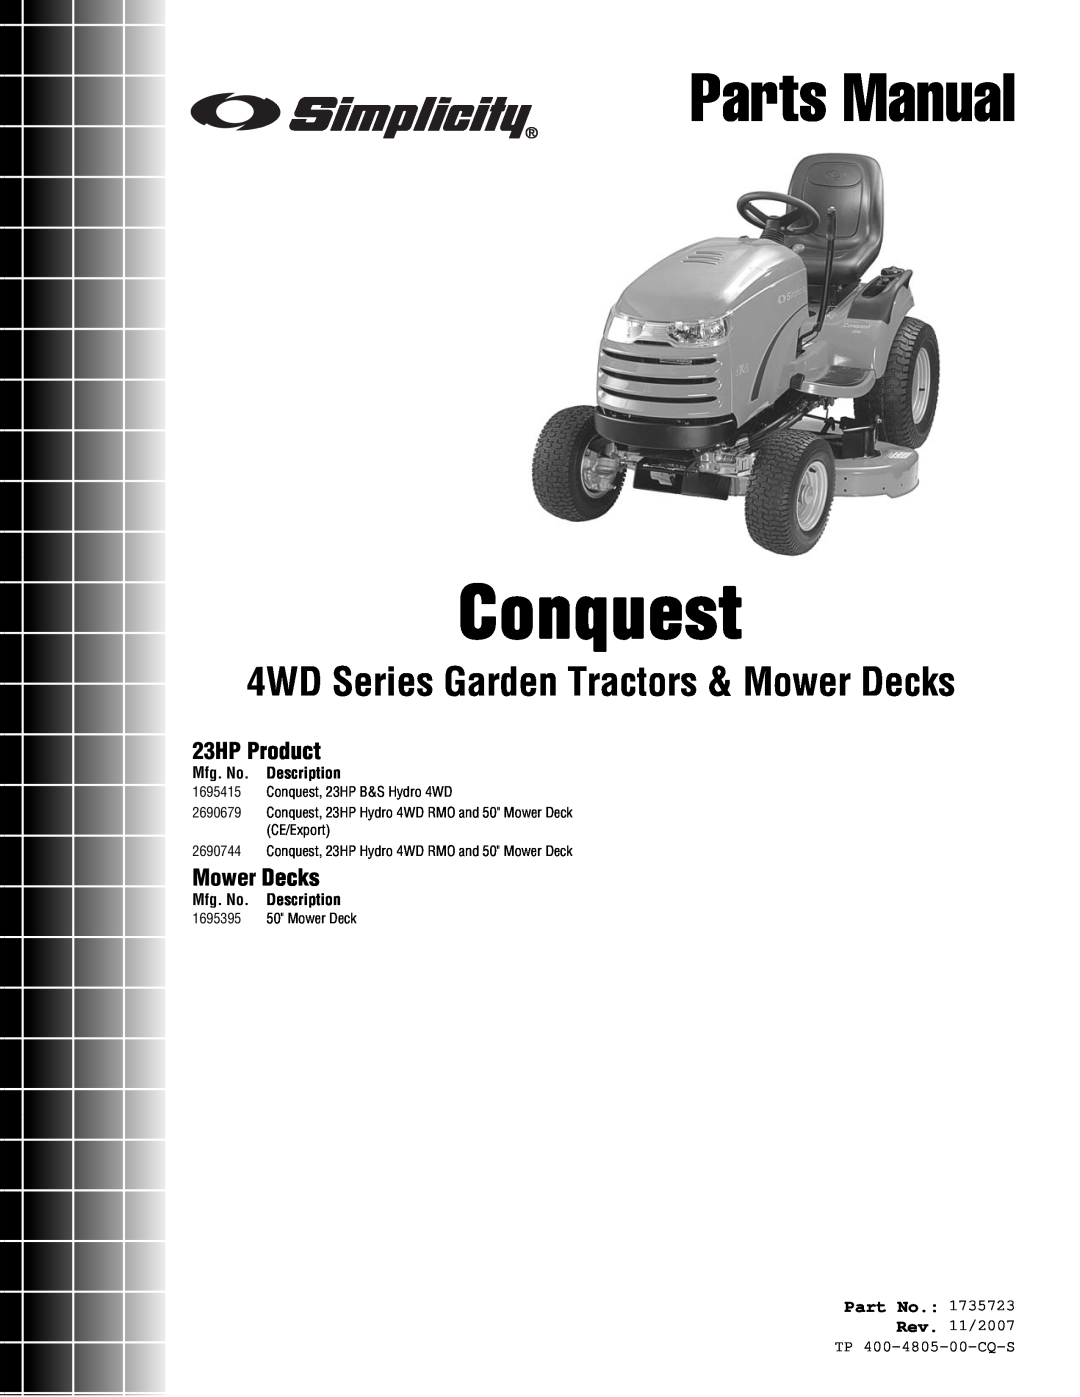 Simplicity 4WD Series manual 23HP Product, Mower Decks, Part No, Mfg. No. Description, Conquest, Parts Manual 